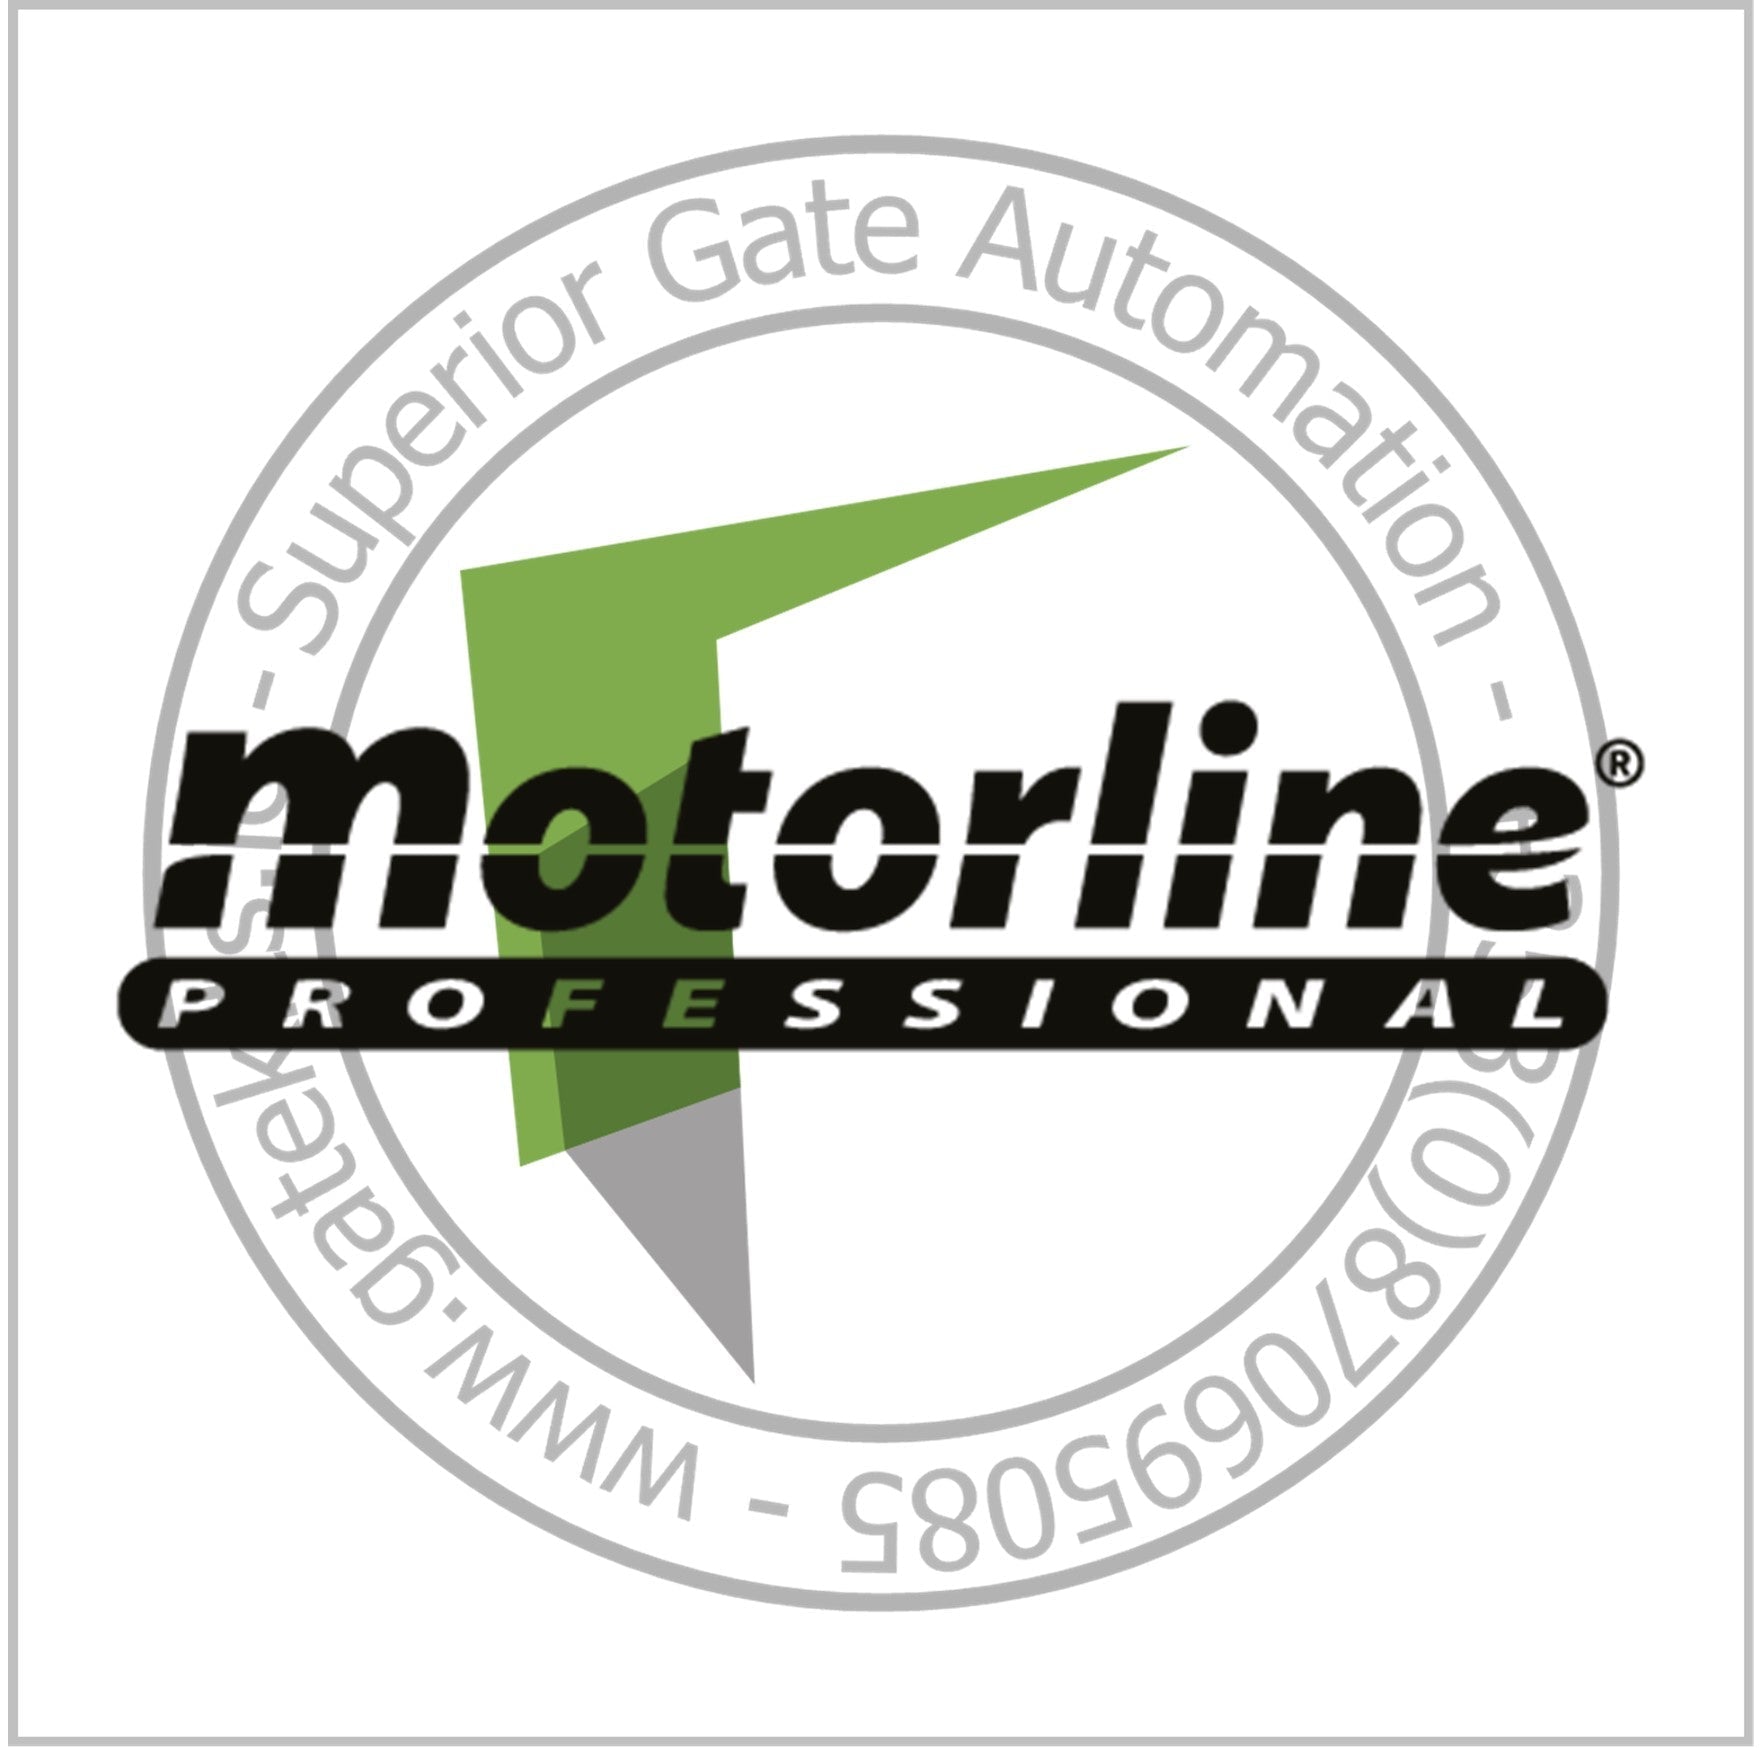 Motorline SLIDE800A Sliding Gate Kit